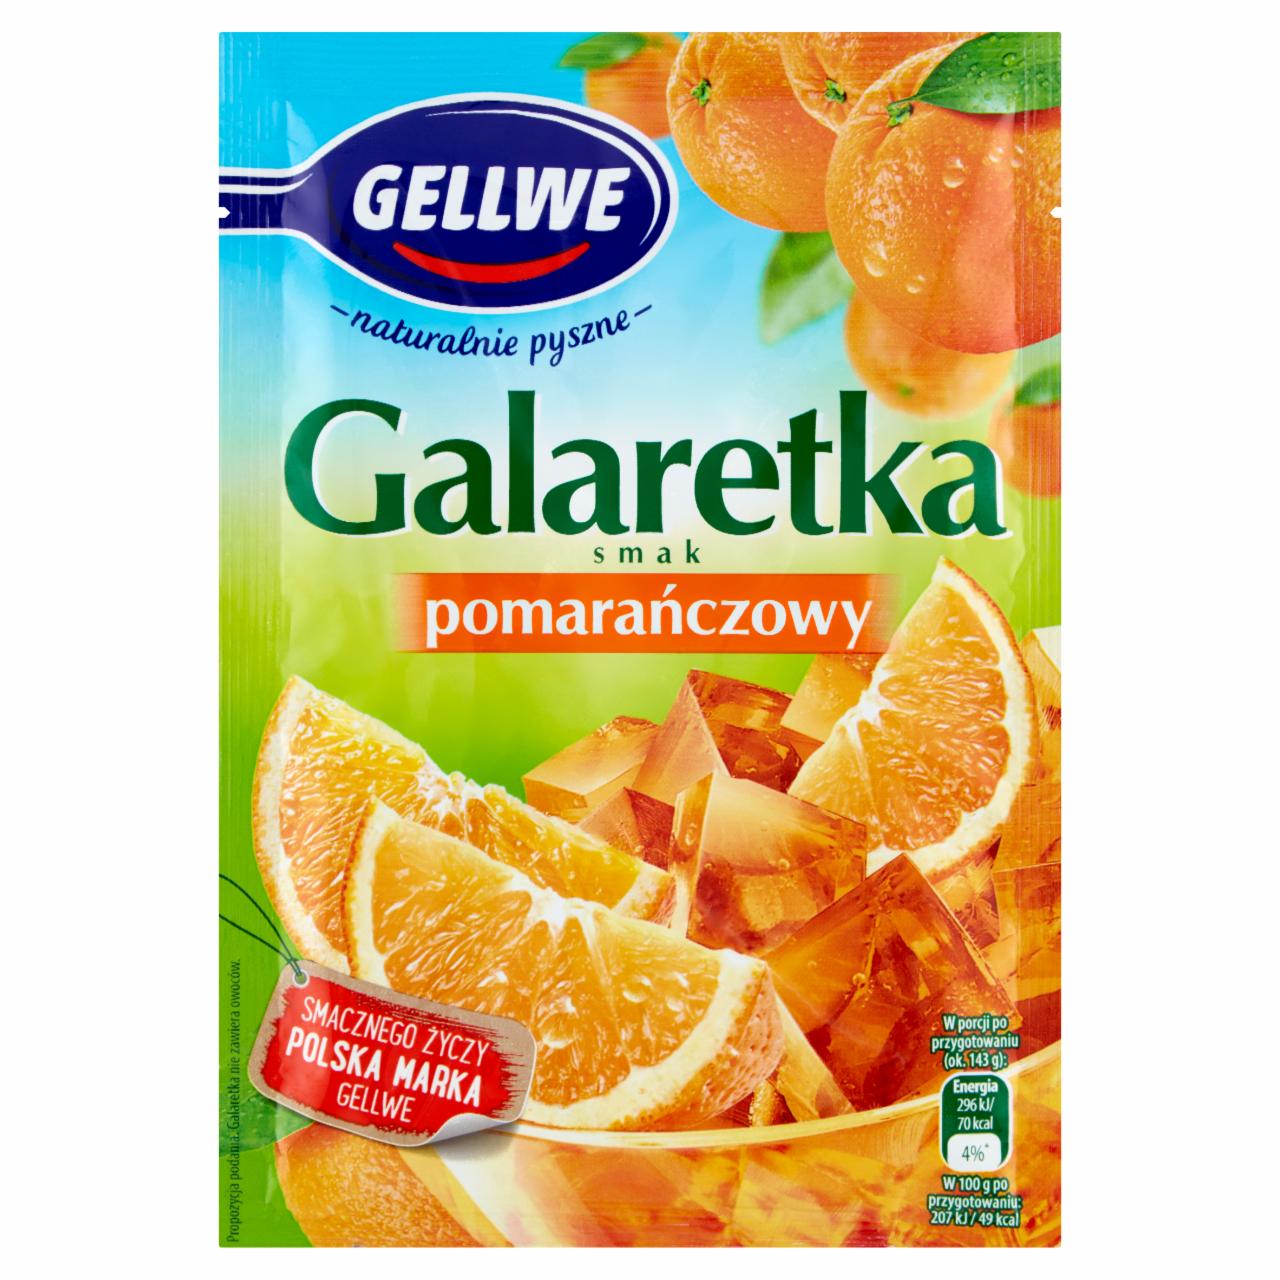 Zdjęcia - Galaretka smak pomarańczowy 72 g Gellwe